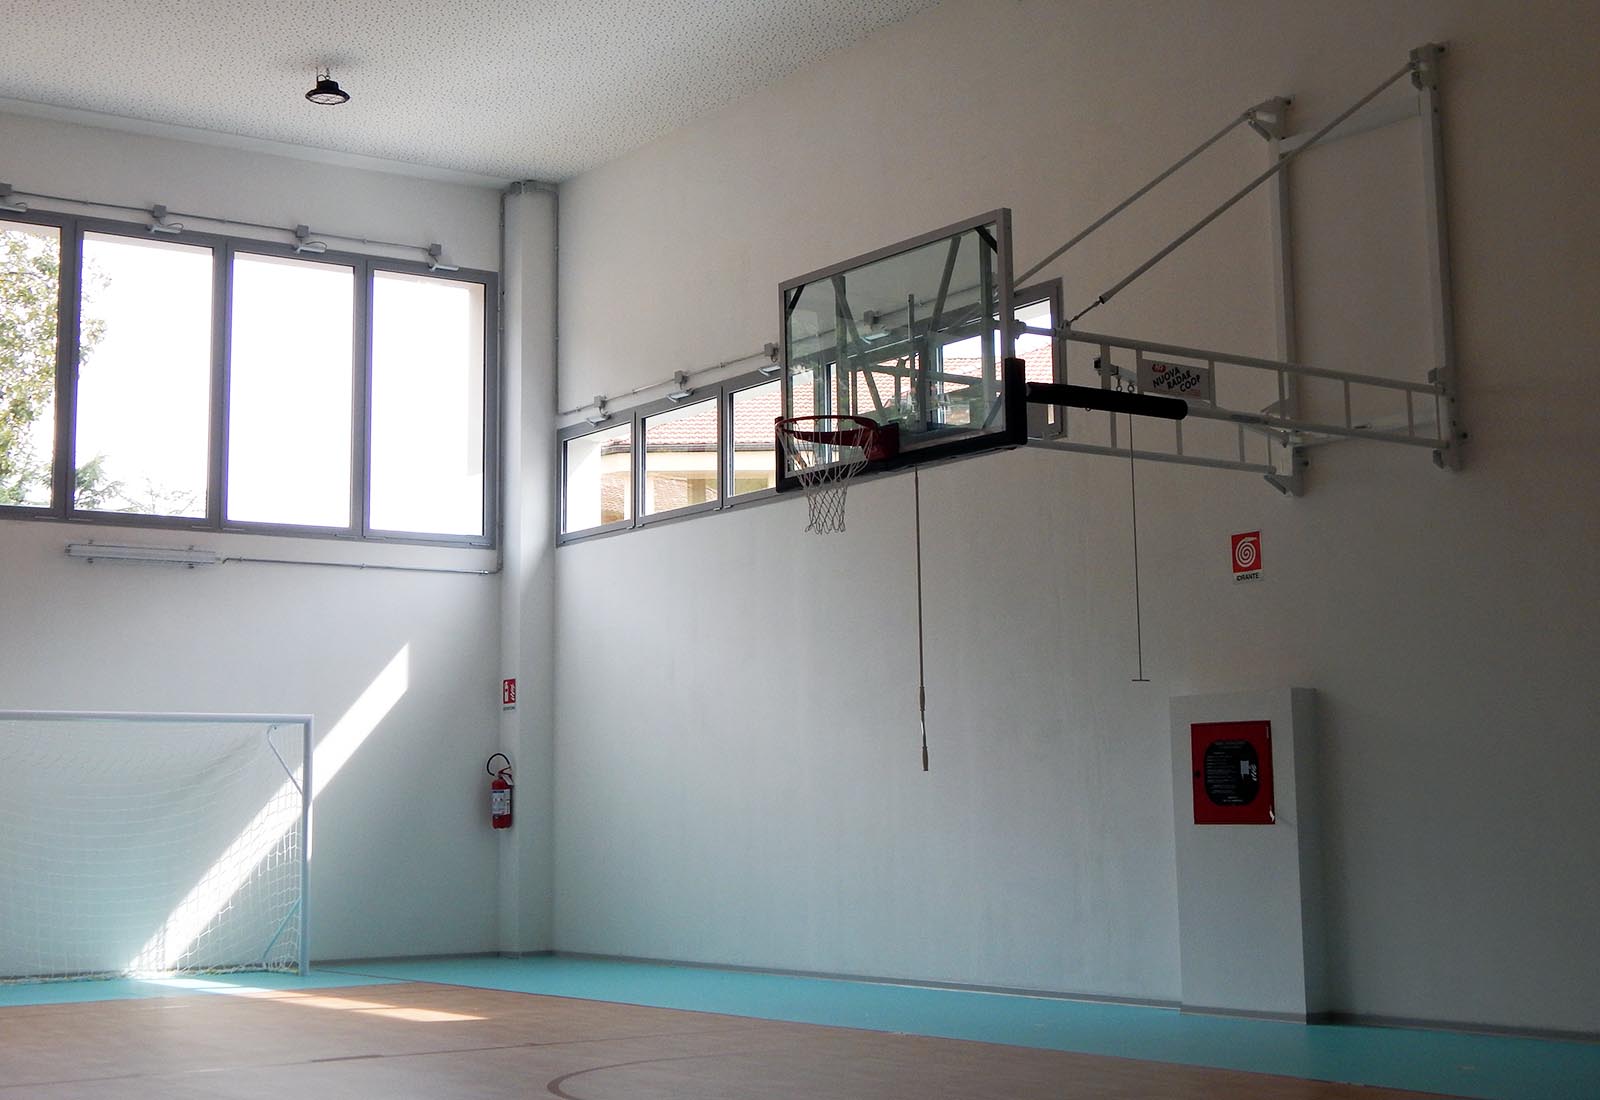 Primary school in Gravedona - The gym